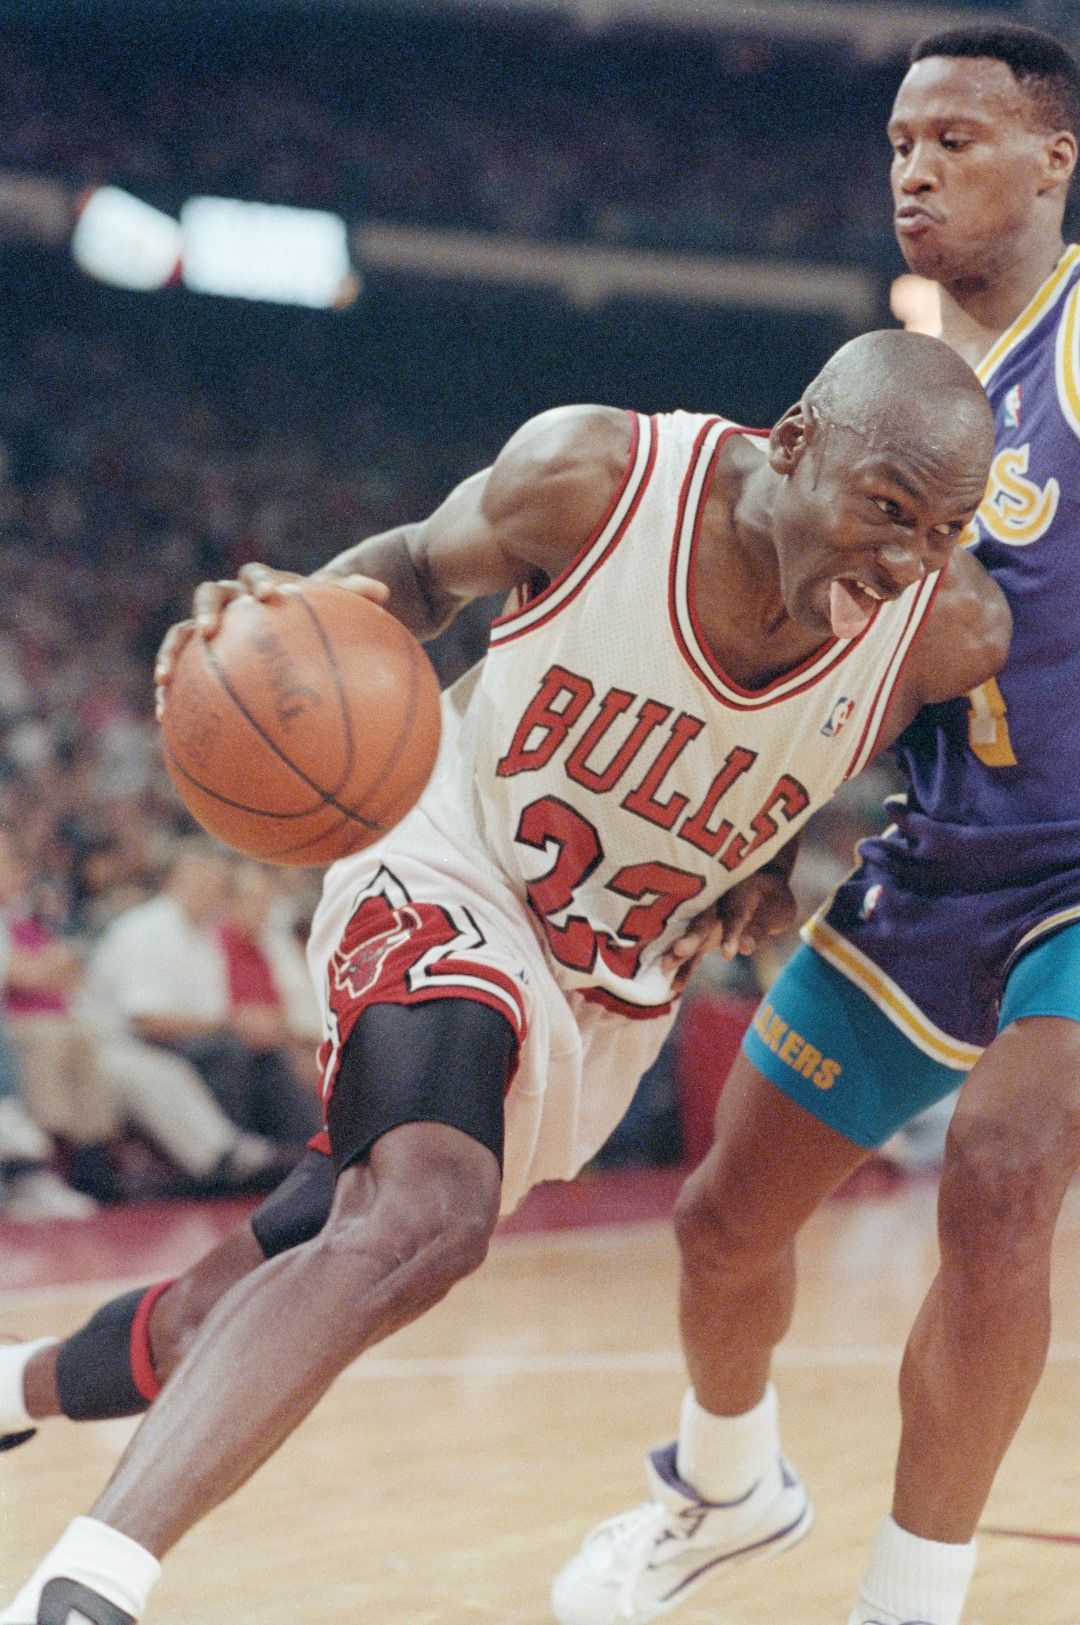 Фамозният номер 23 в действие. Джордан донесе три поредни титли в НБА в началото на 90-те години за Чикаго, преди да реши да се оттегли към бейзбола